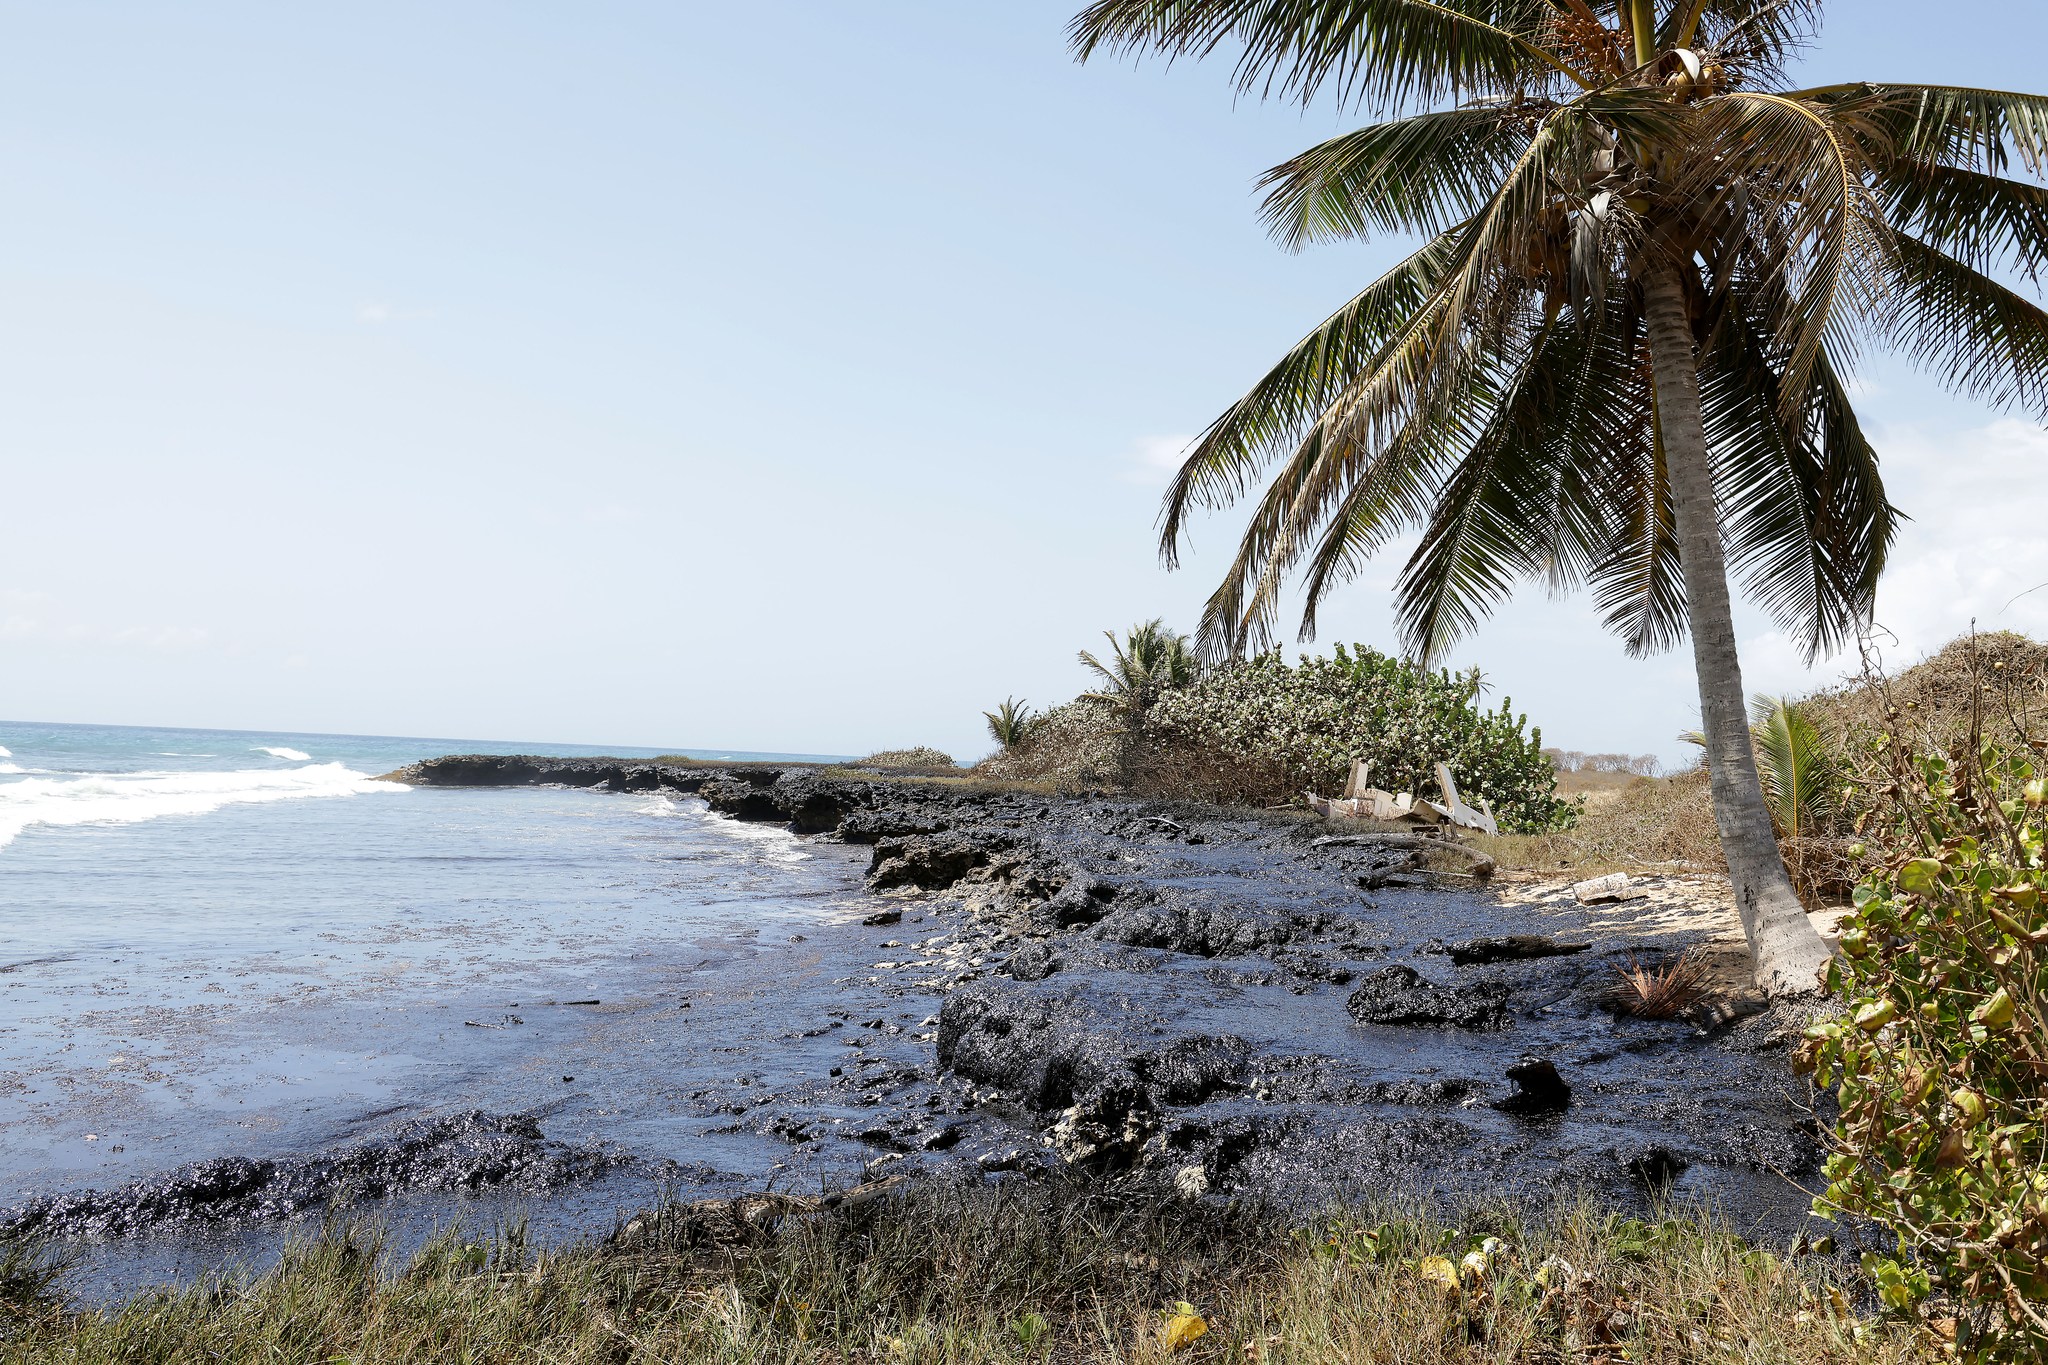     Trinidad-et-Tobago : la marée noire toujours pas contenue, gros dégâts sur les côtes

